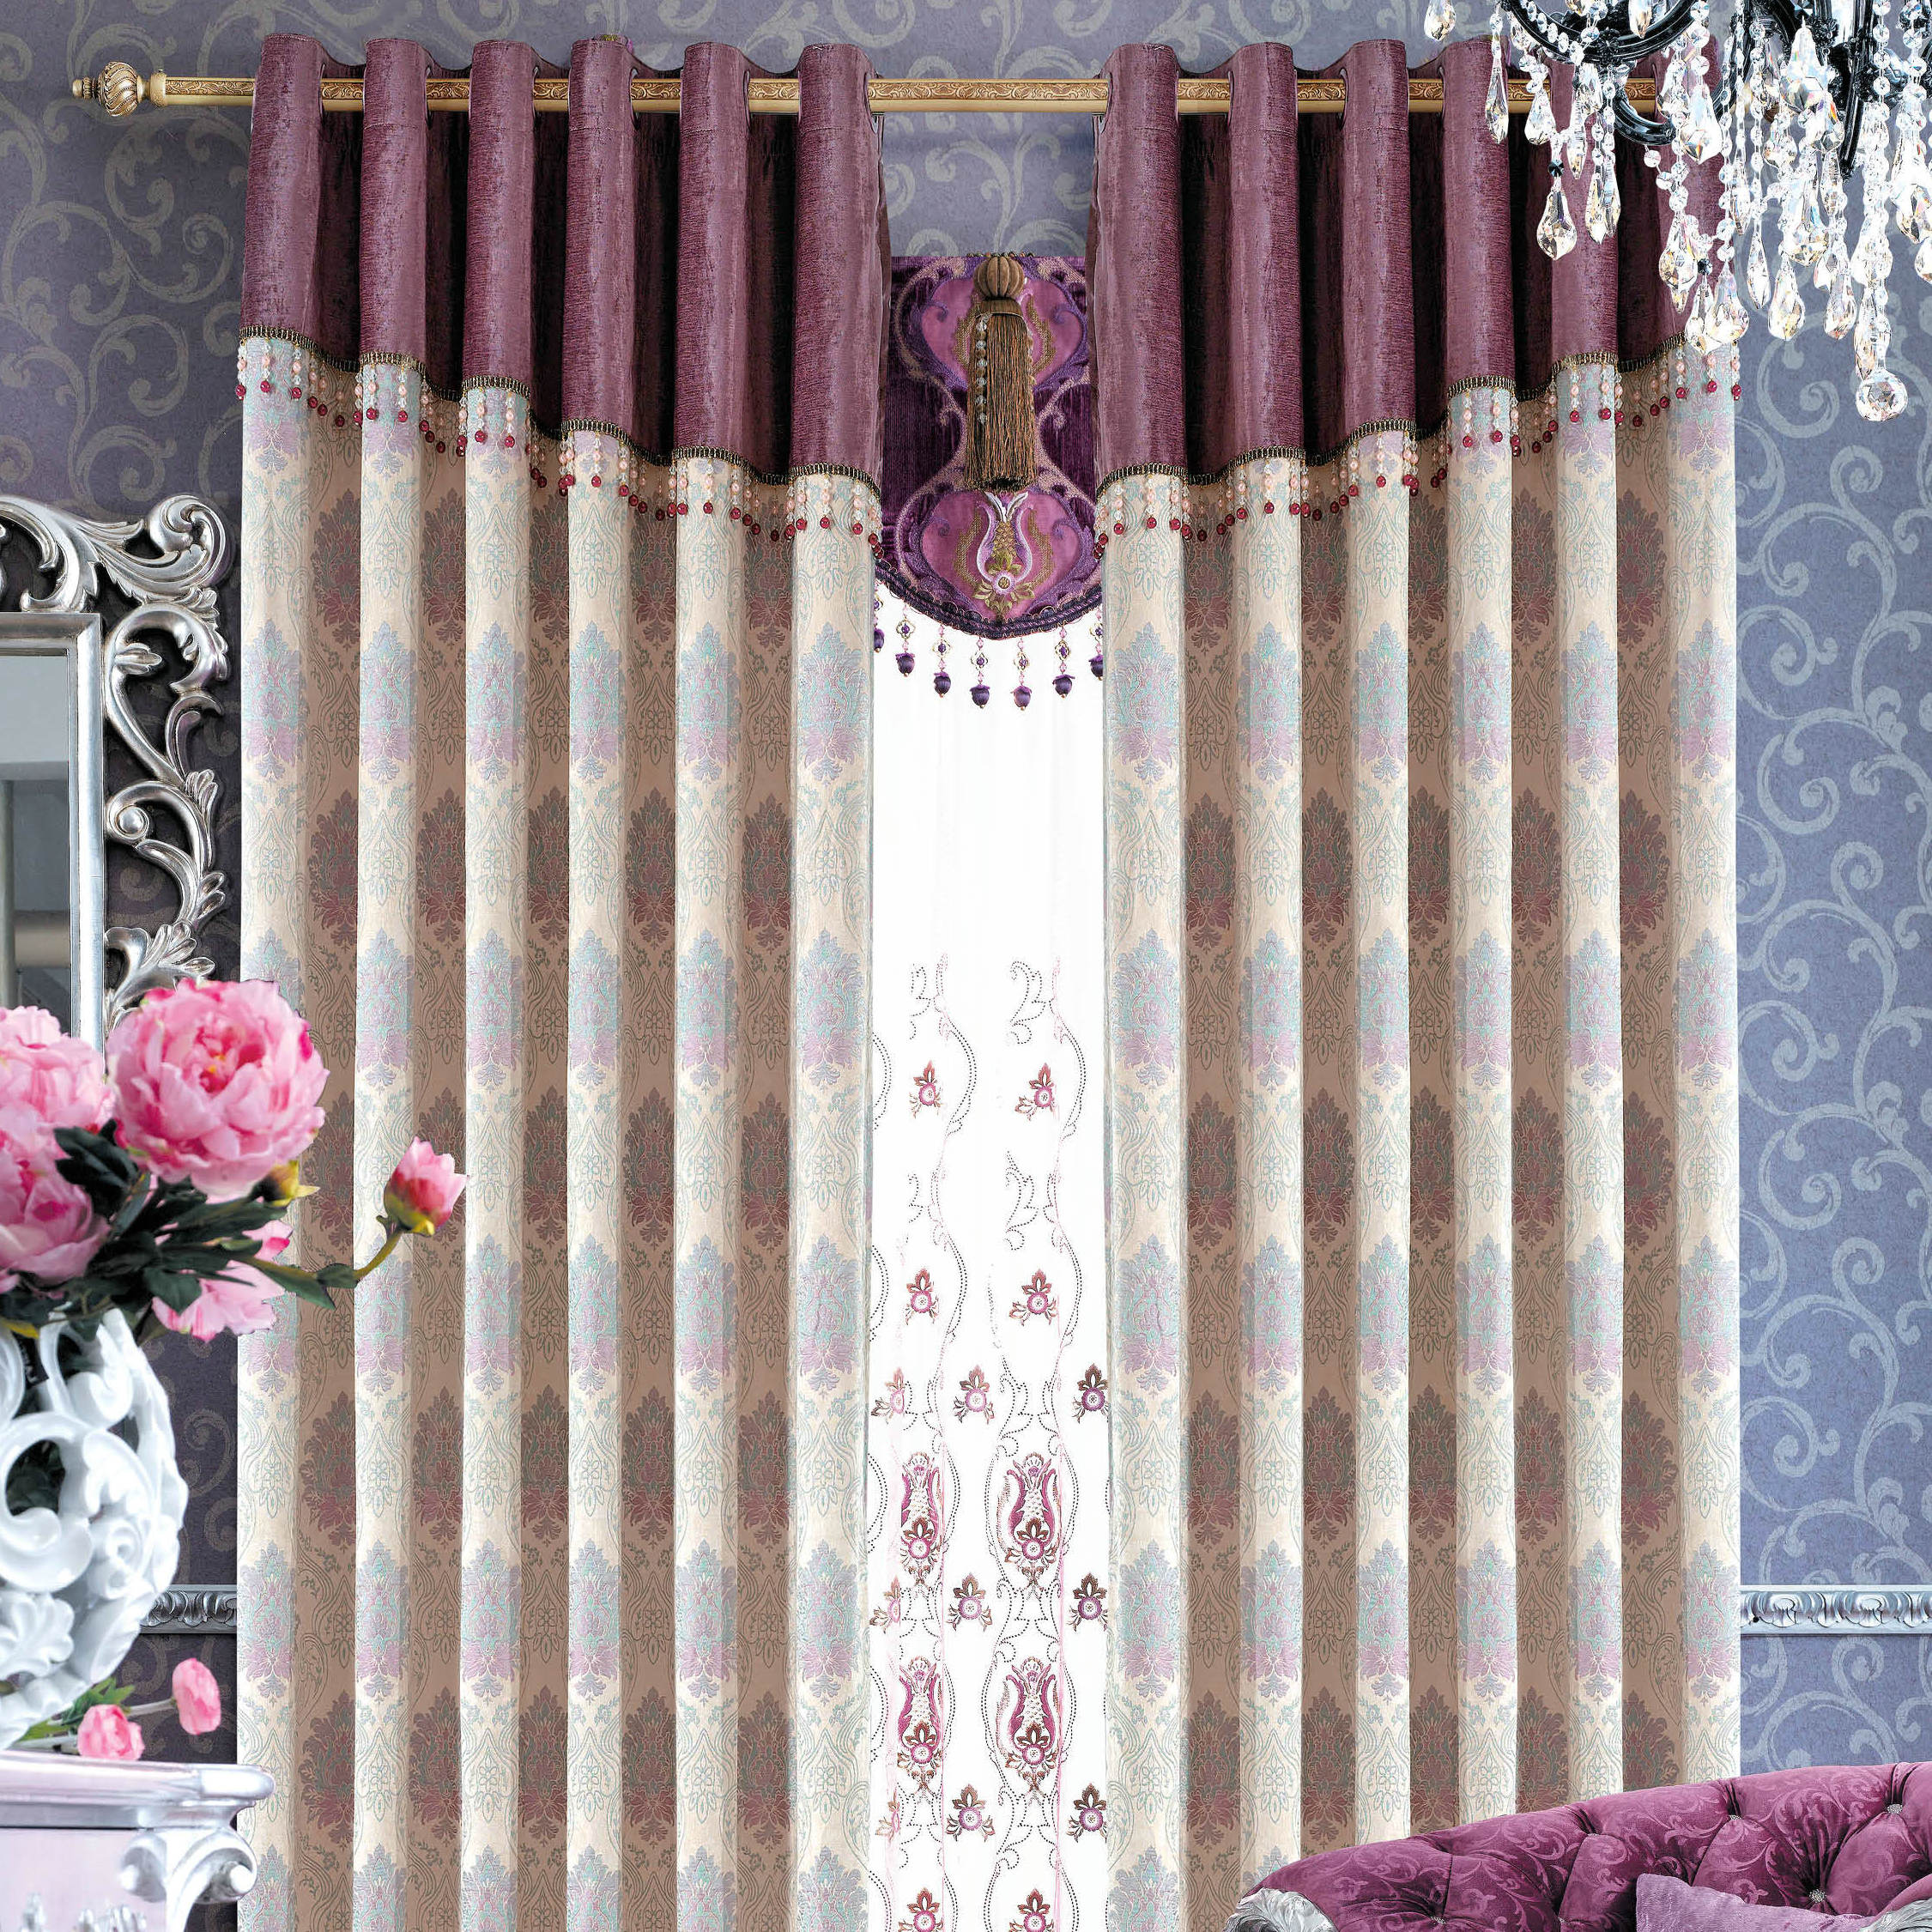 奢华欧式高档客厅遮光紫色打孔帘飘窗落地窗布平帷定制窗帘